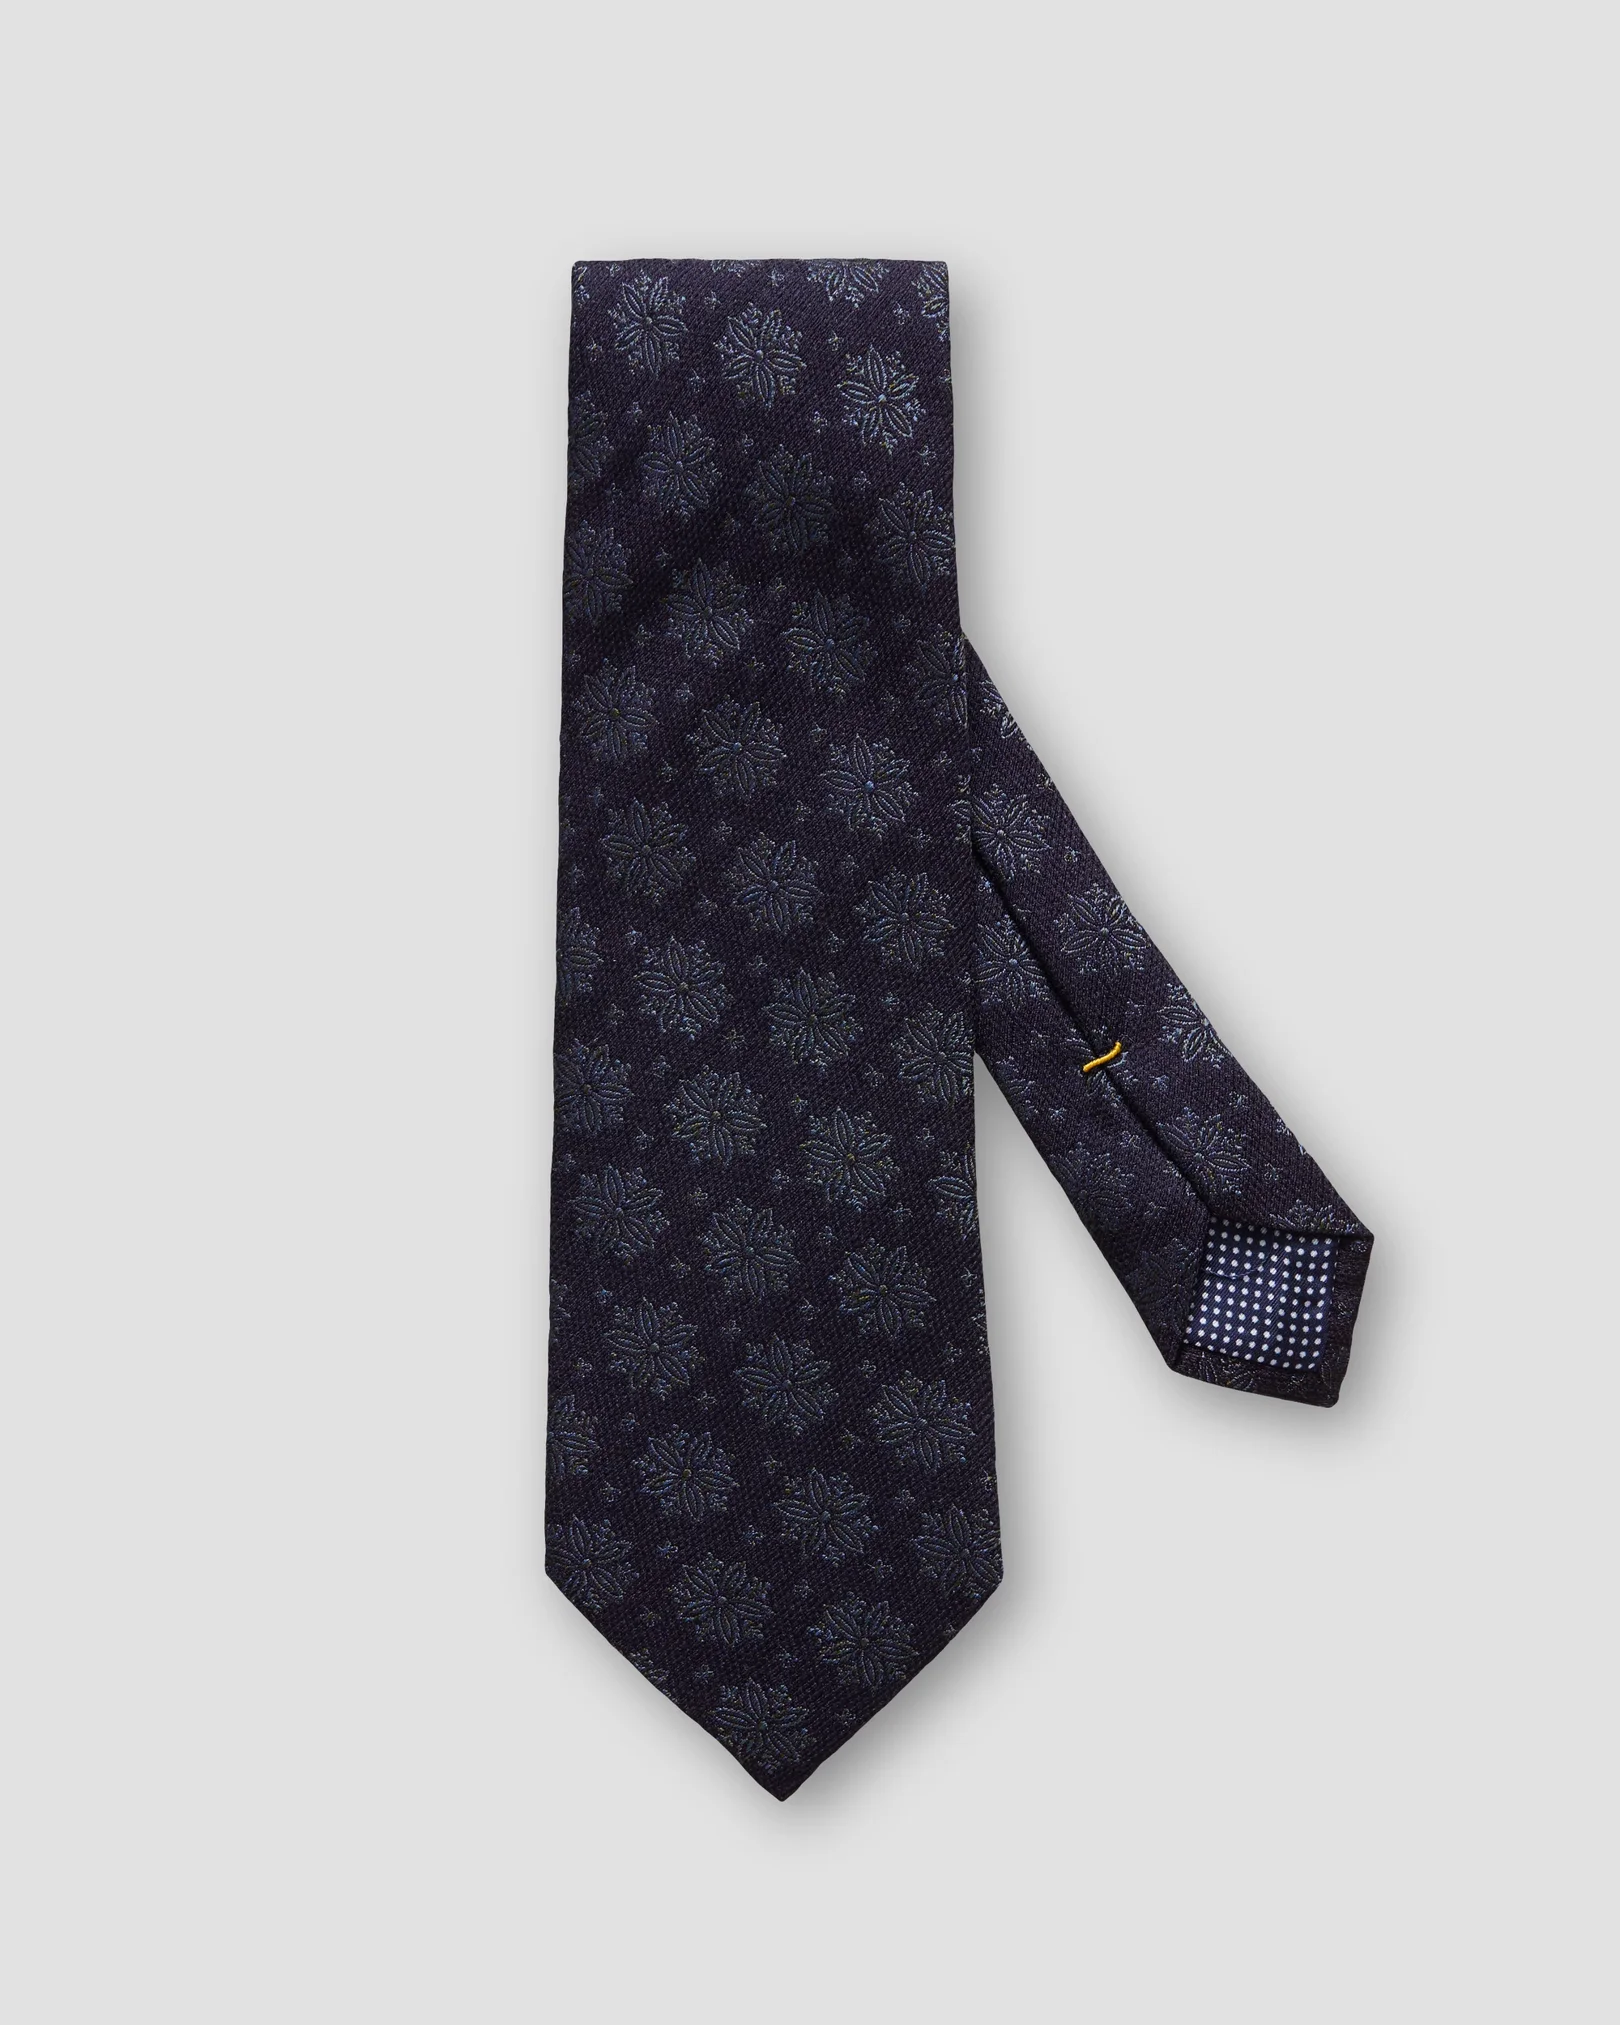 Eton - navy blue floral ptinted tie